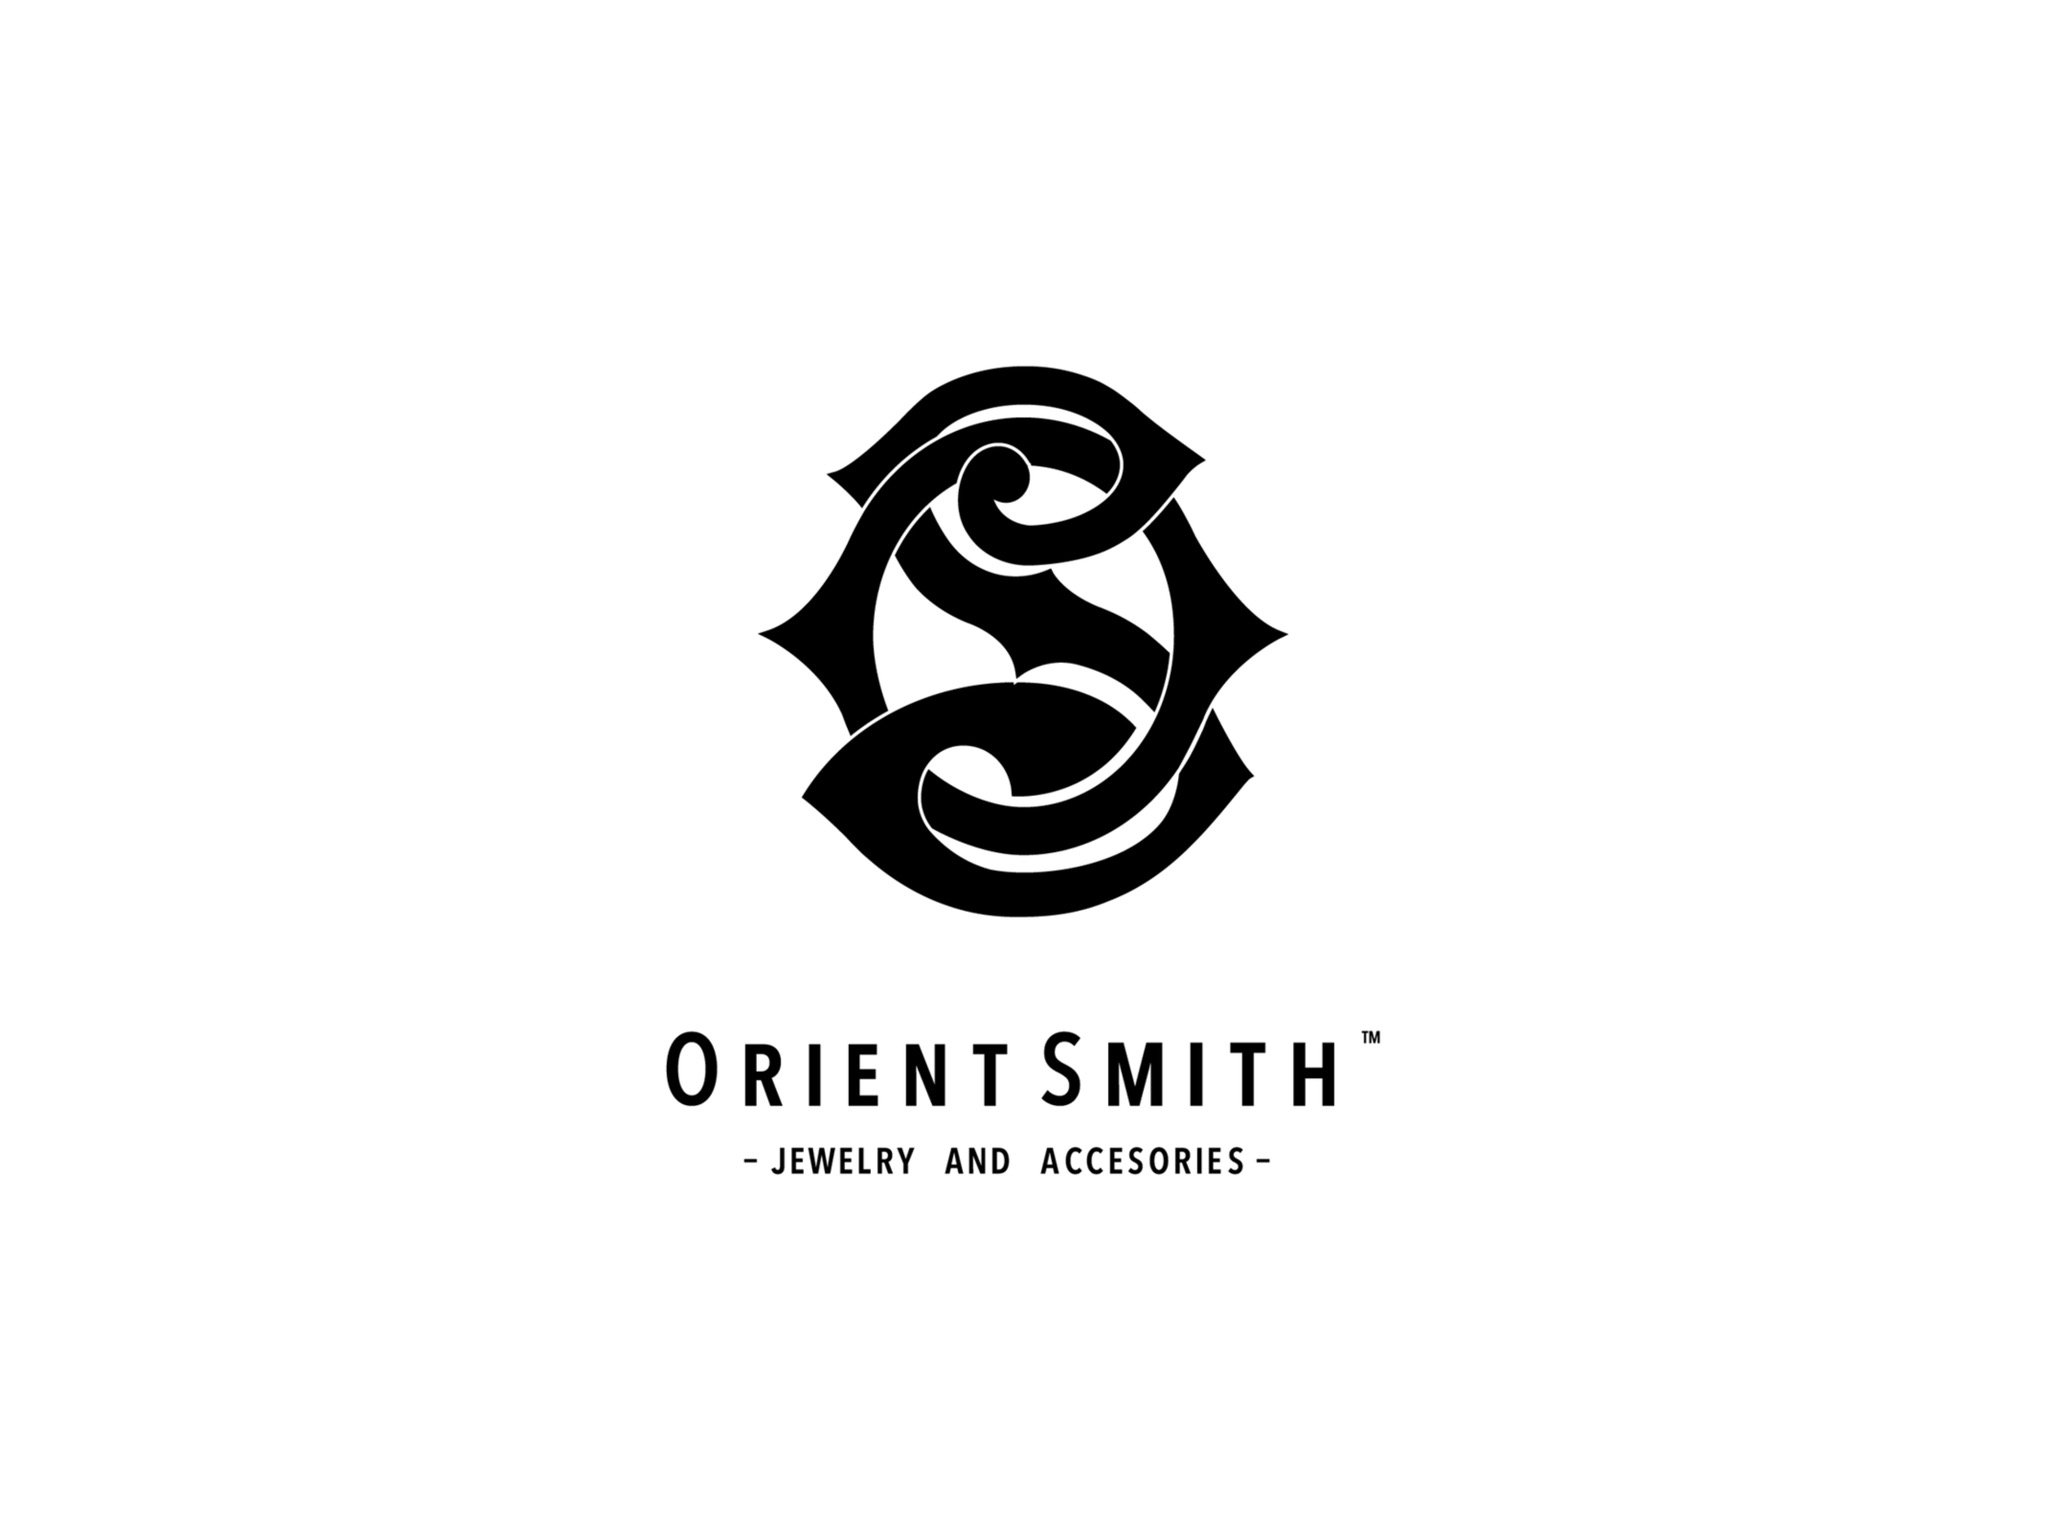 ORIENT SMITH 